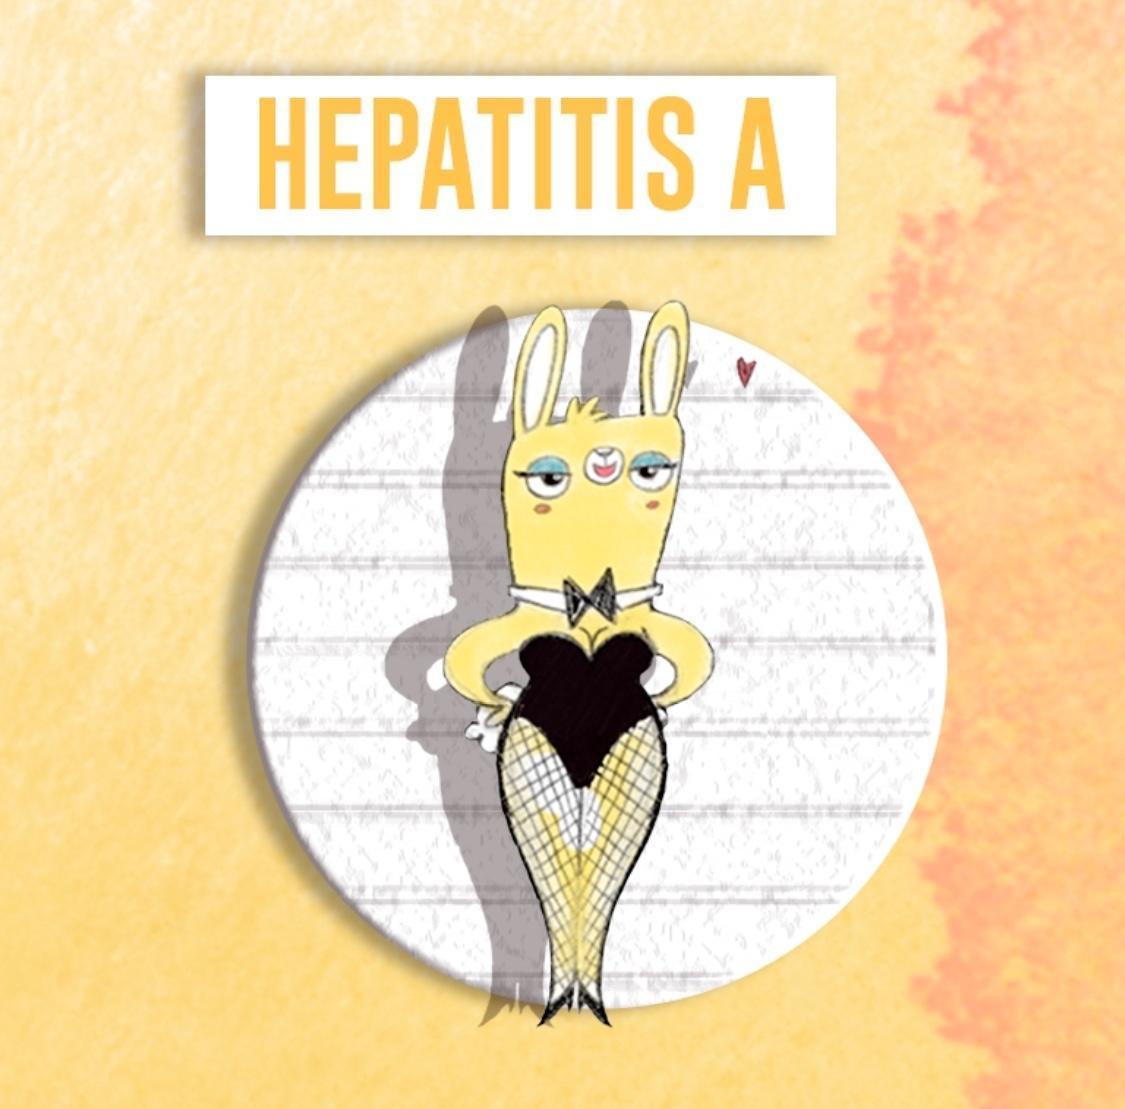 Ir a Hepatitis A